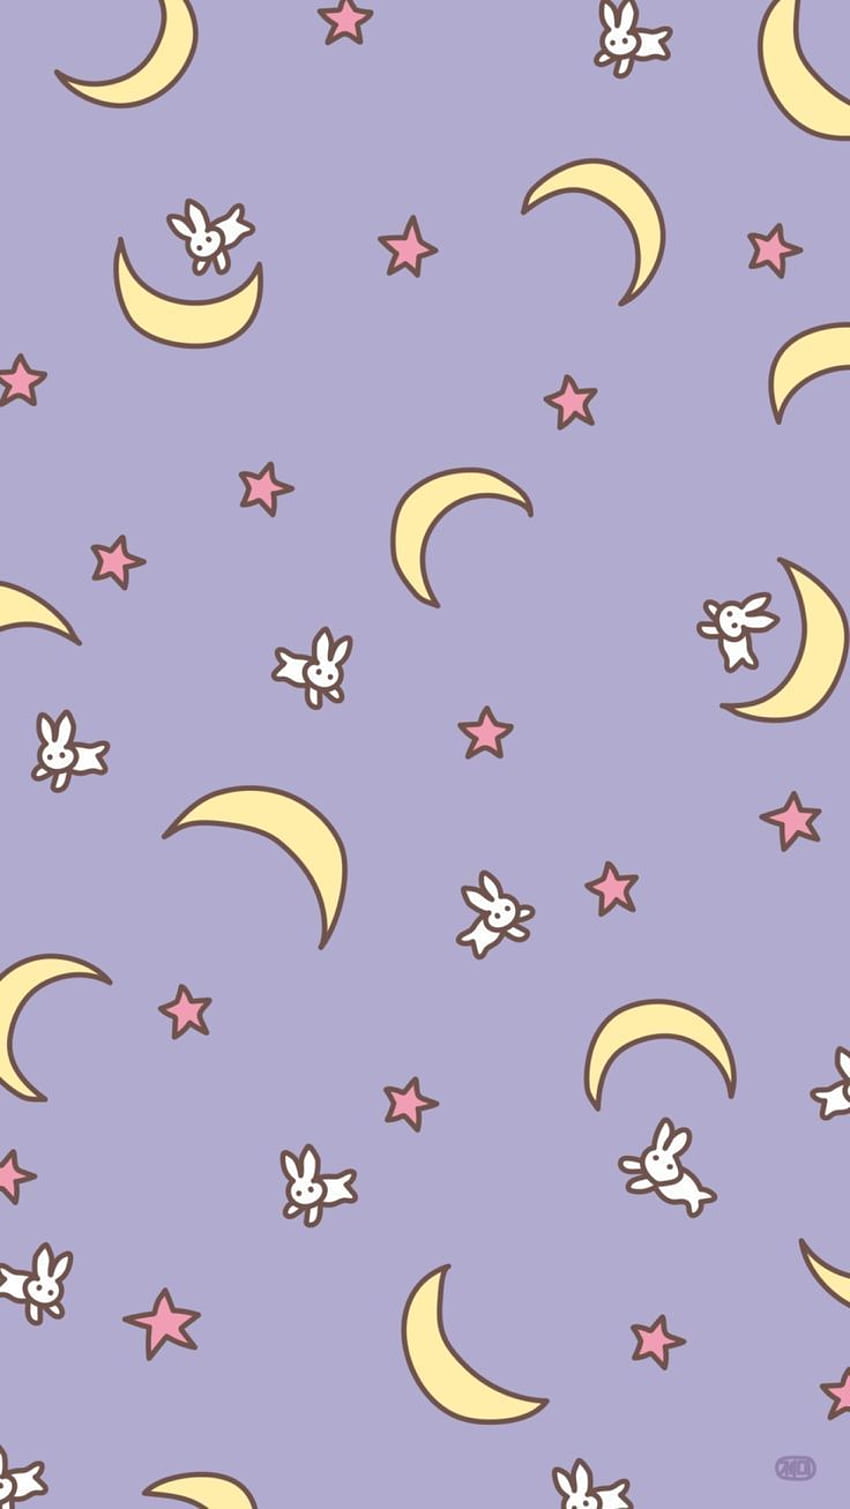 Sailor moon iphone x HD wallpapers | Pxfuel